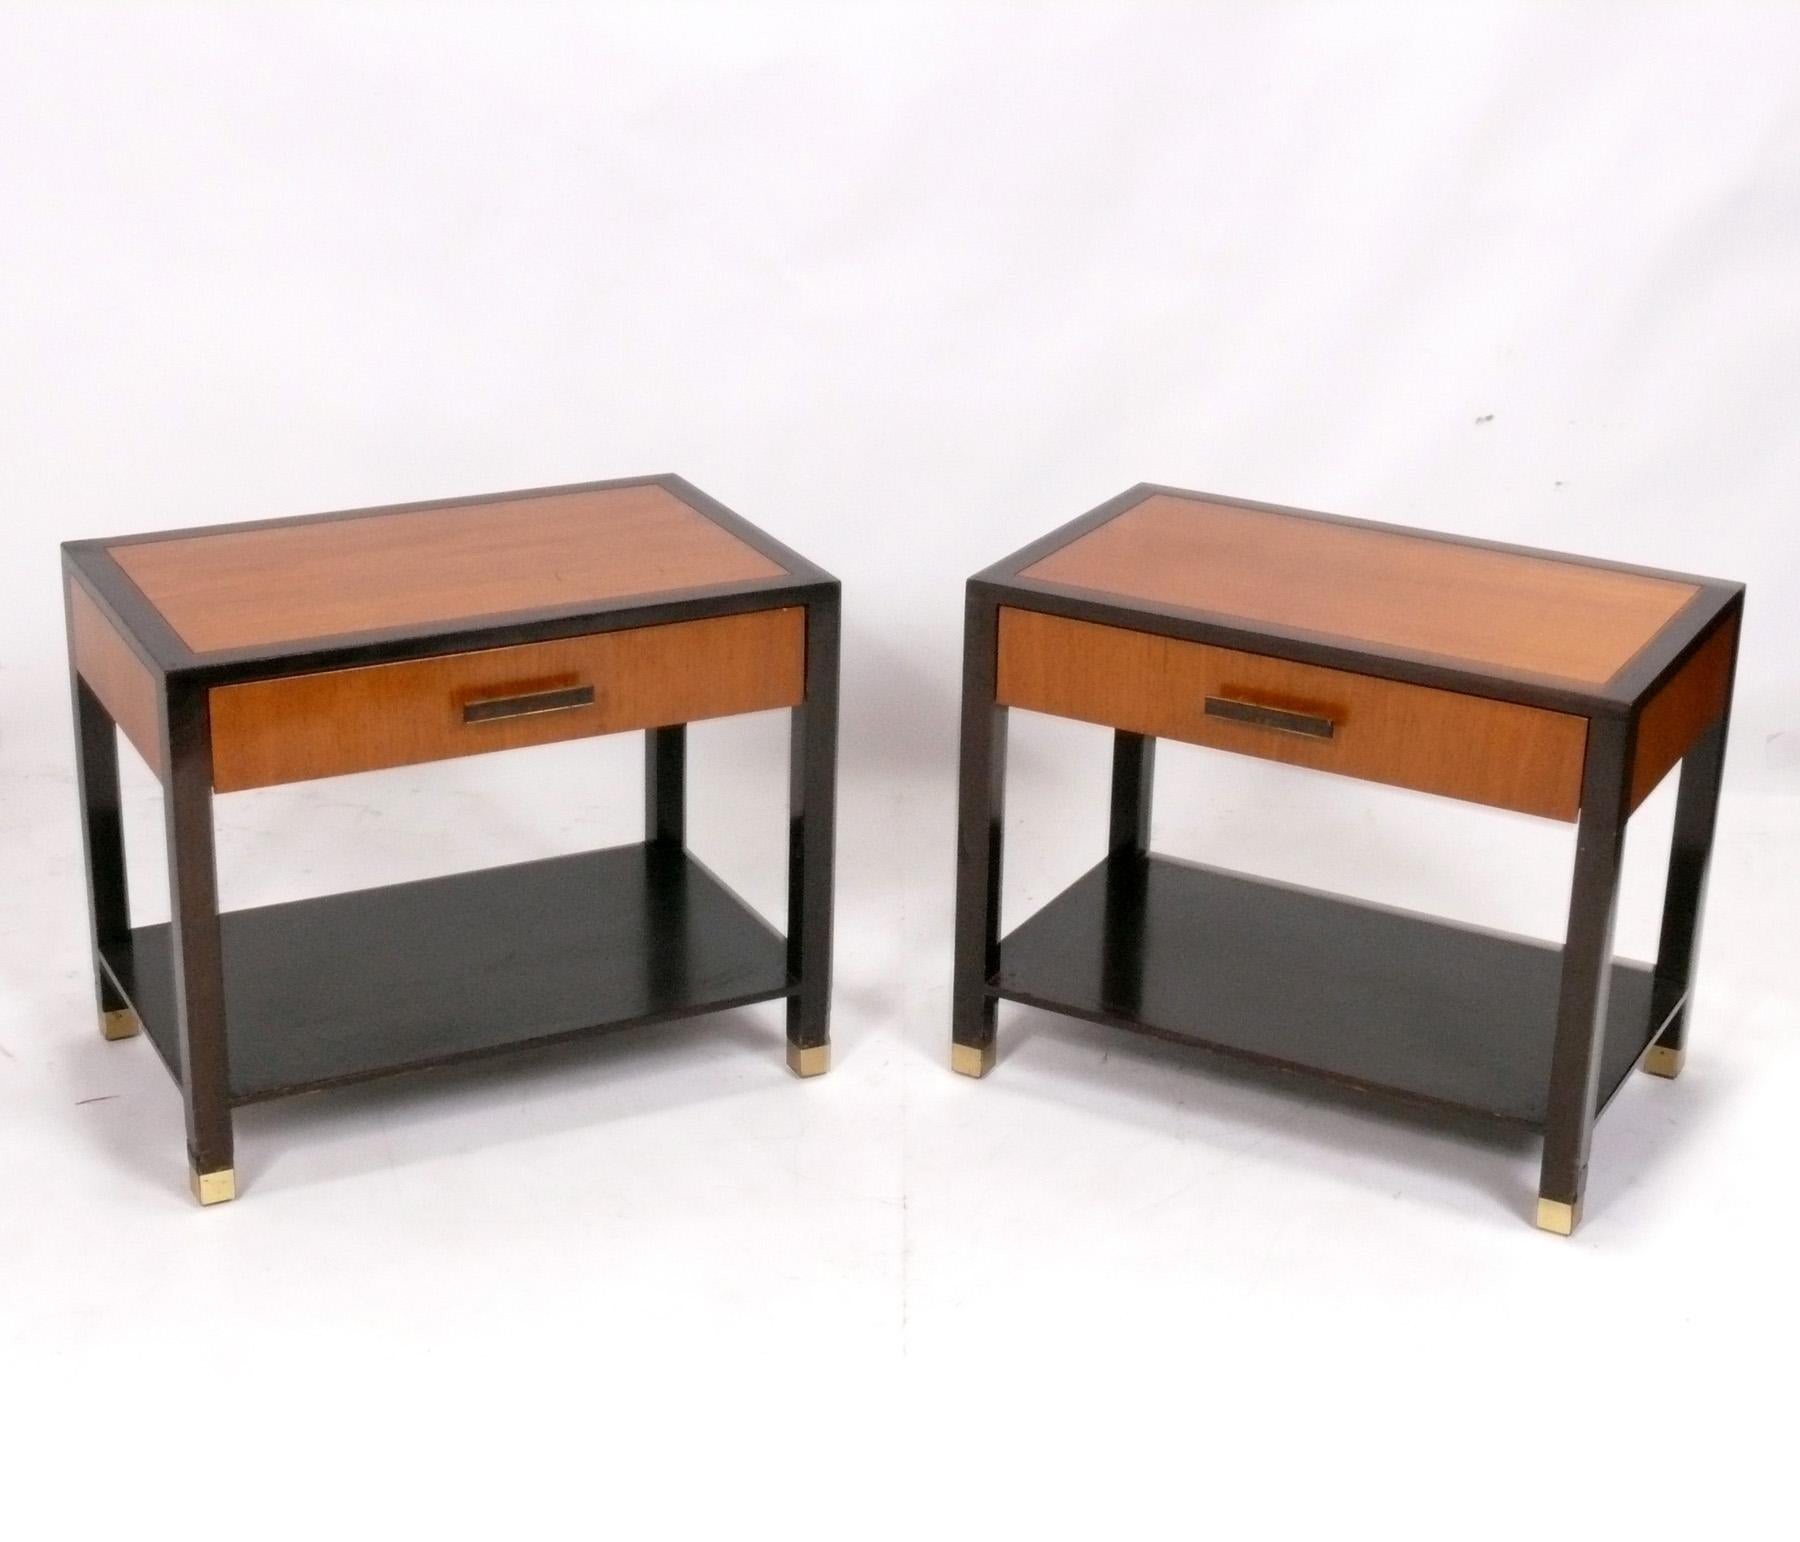 Ein Paar elegante Nachttische oder Beistelltische, entworfen von Harvey Probber, Amerikaner, um 1960. Signiert in einer der Schubladen, siehe letztes Foto. Diese Tische werden derzeit überarbeitet und werden nach ihrer Fertigstellung unglaublich gut